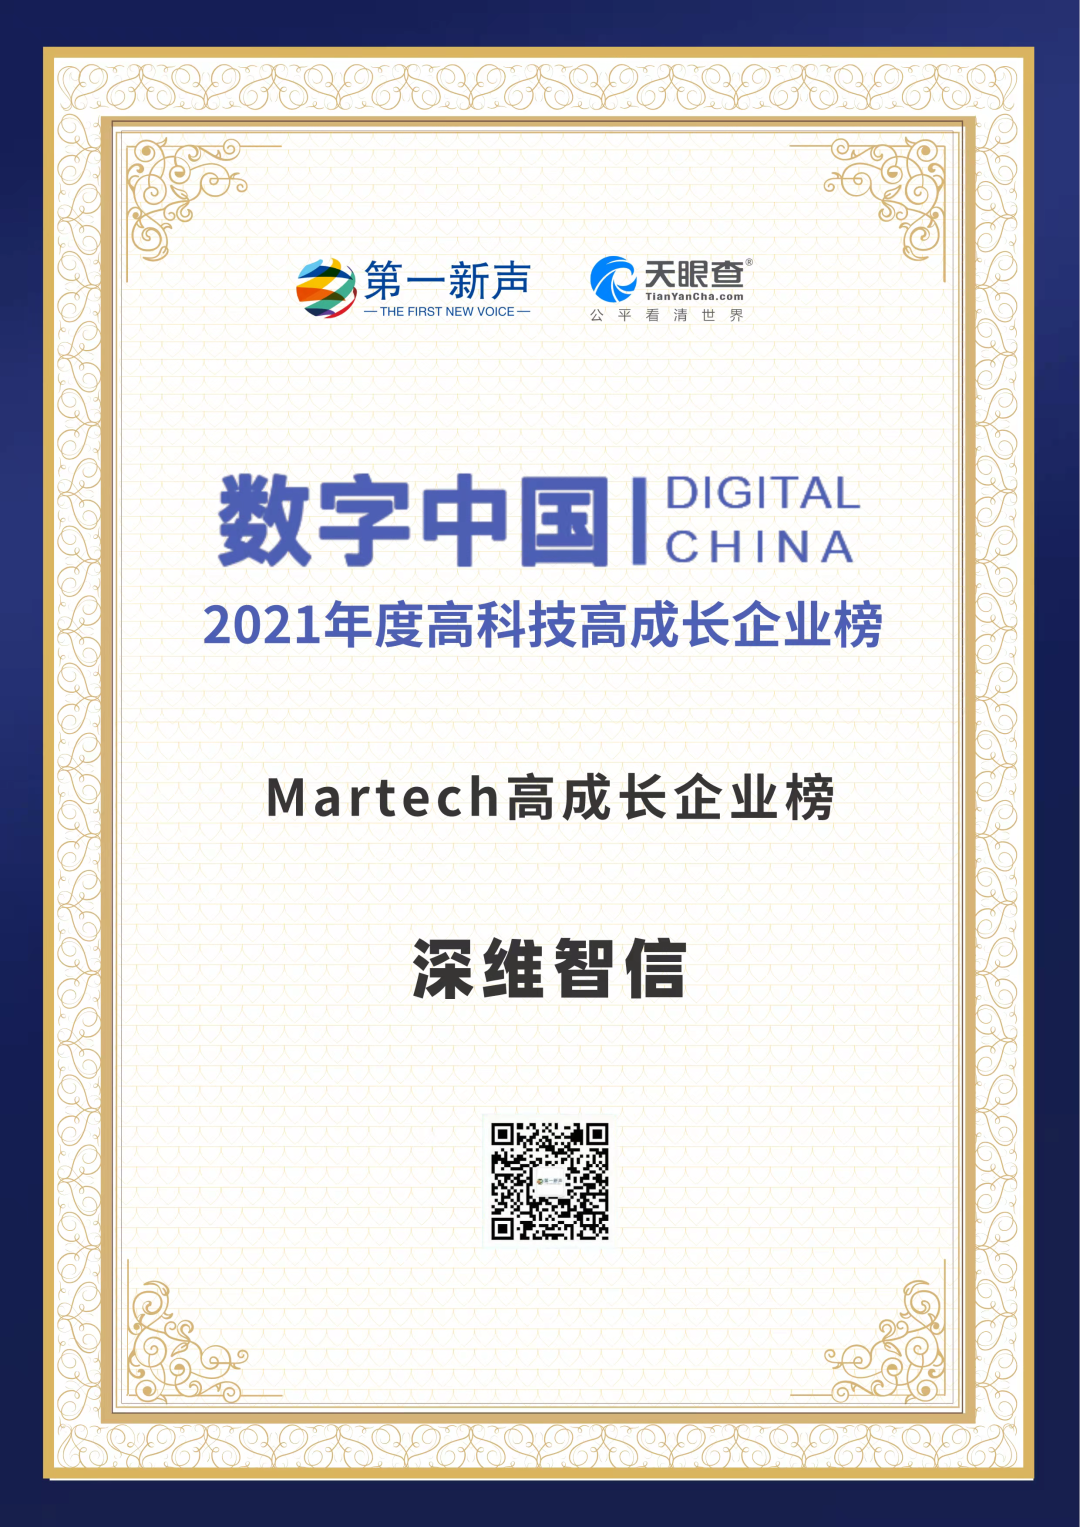 再获殊荣！深维智信荣登 “数字中国 – 2021年度高科技高成长企业系列榜单”！插图2